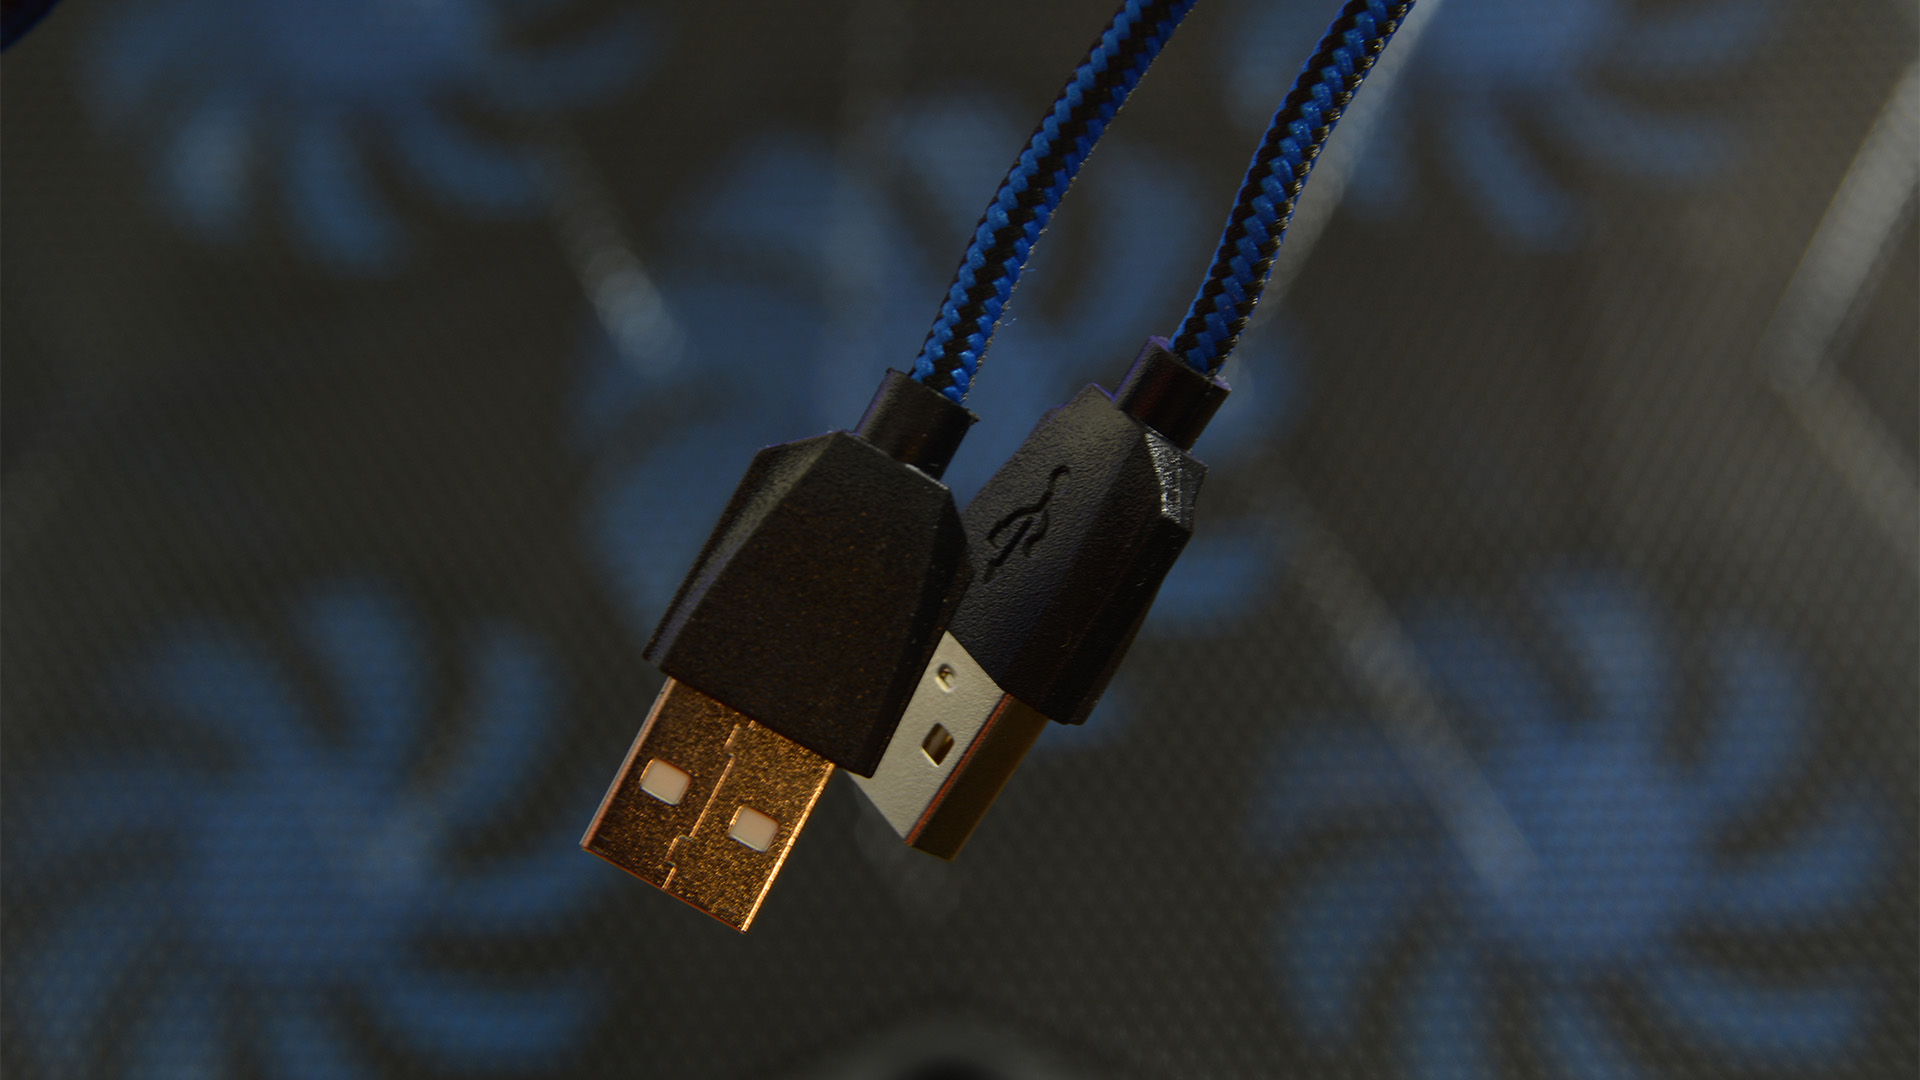 HAVIT HV F2068 braided USB cable